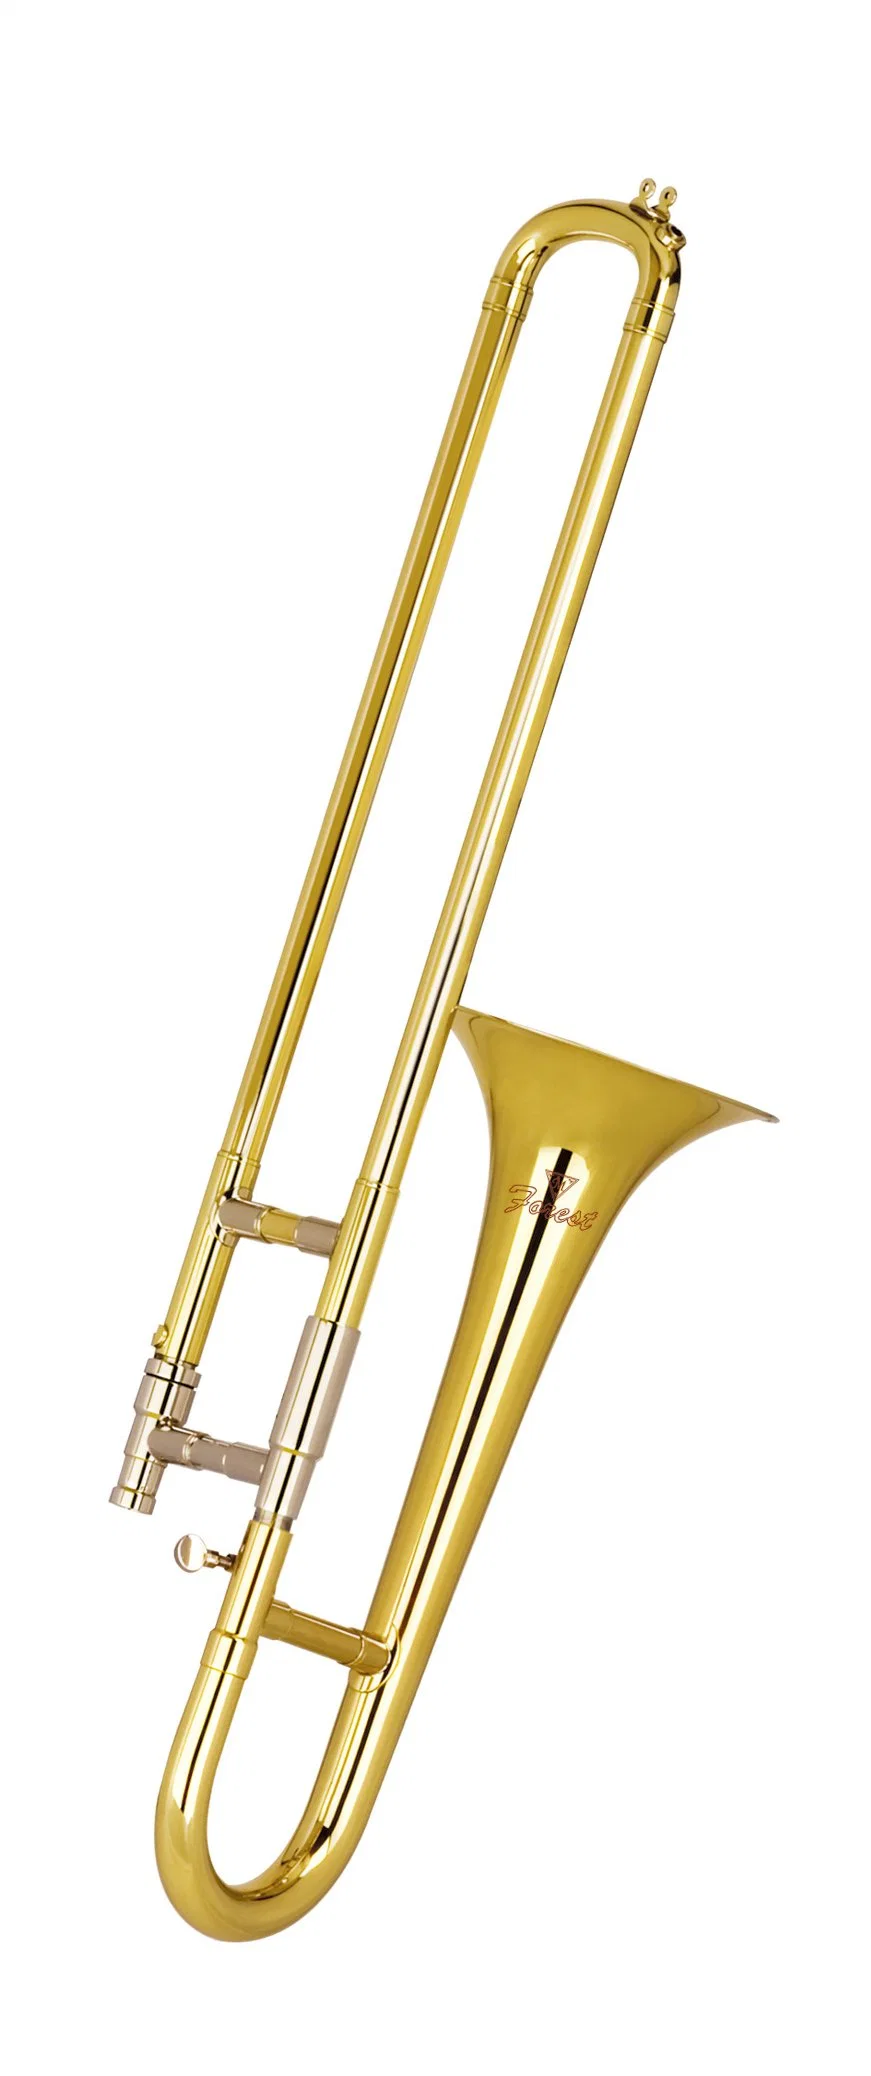 La Soprano Trombone or fabricant de la LAQUE